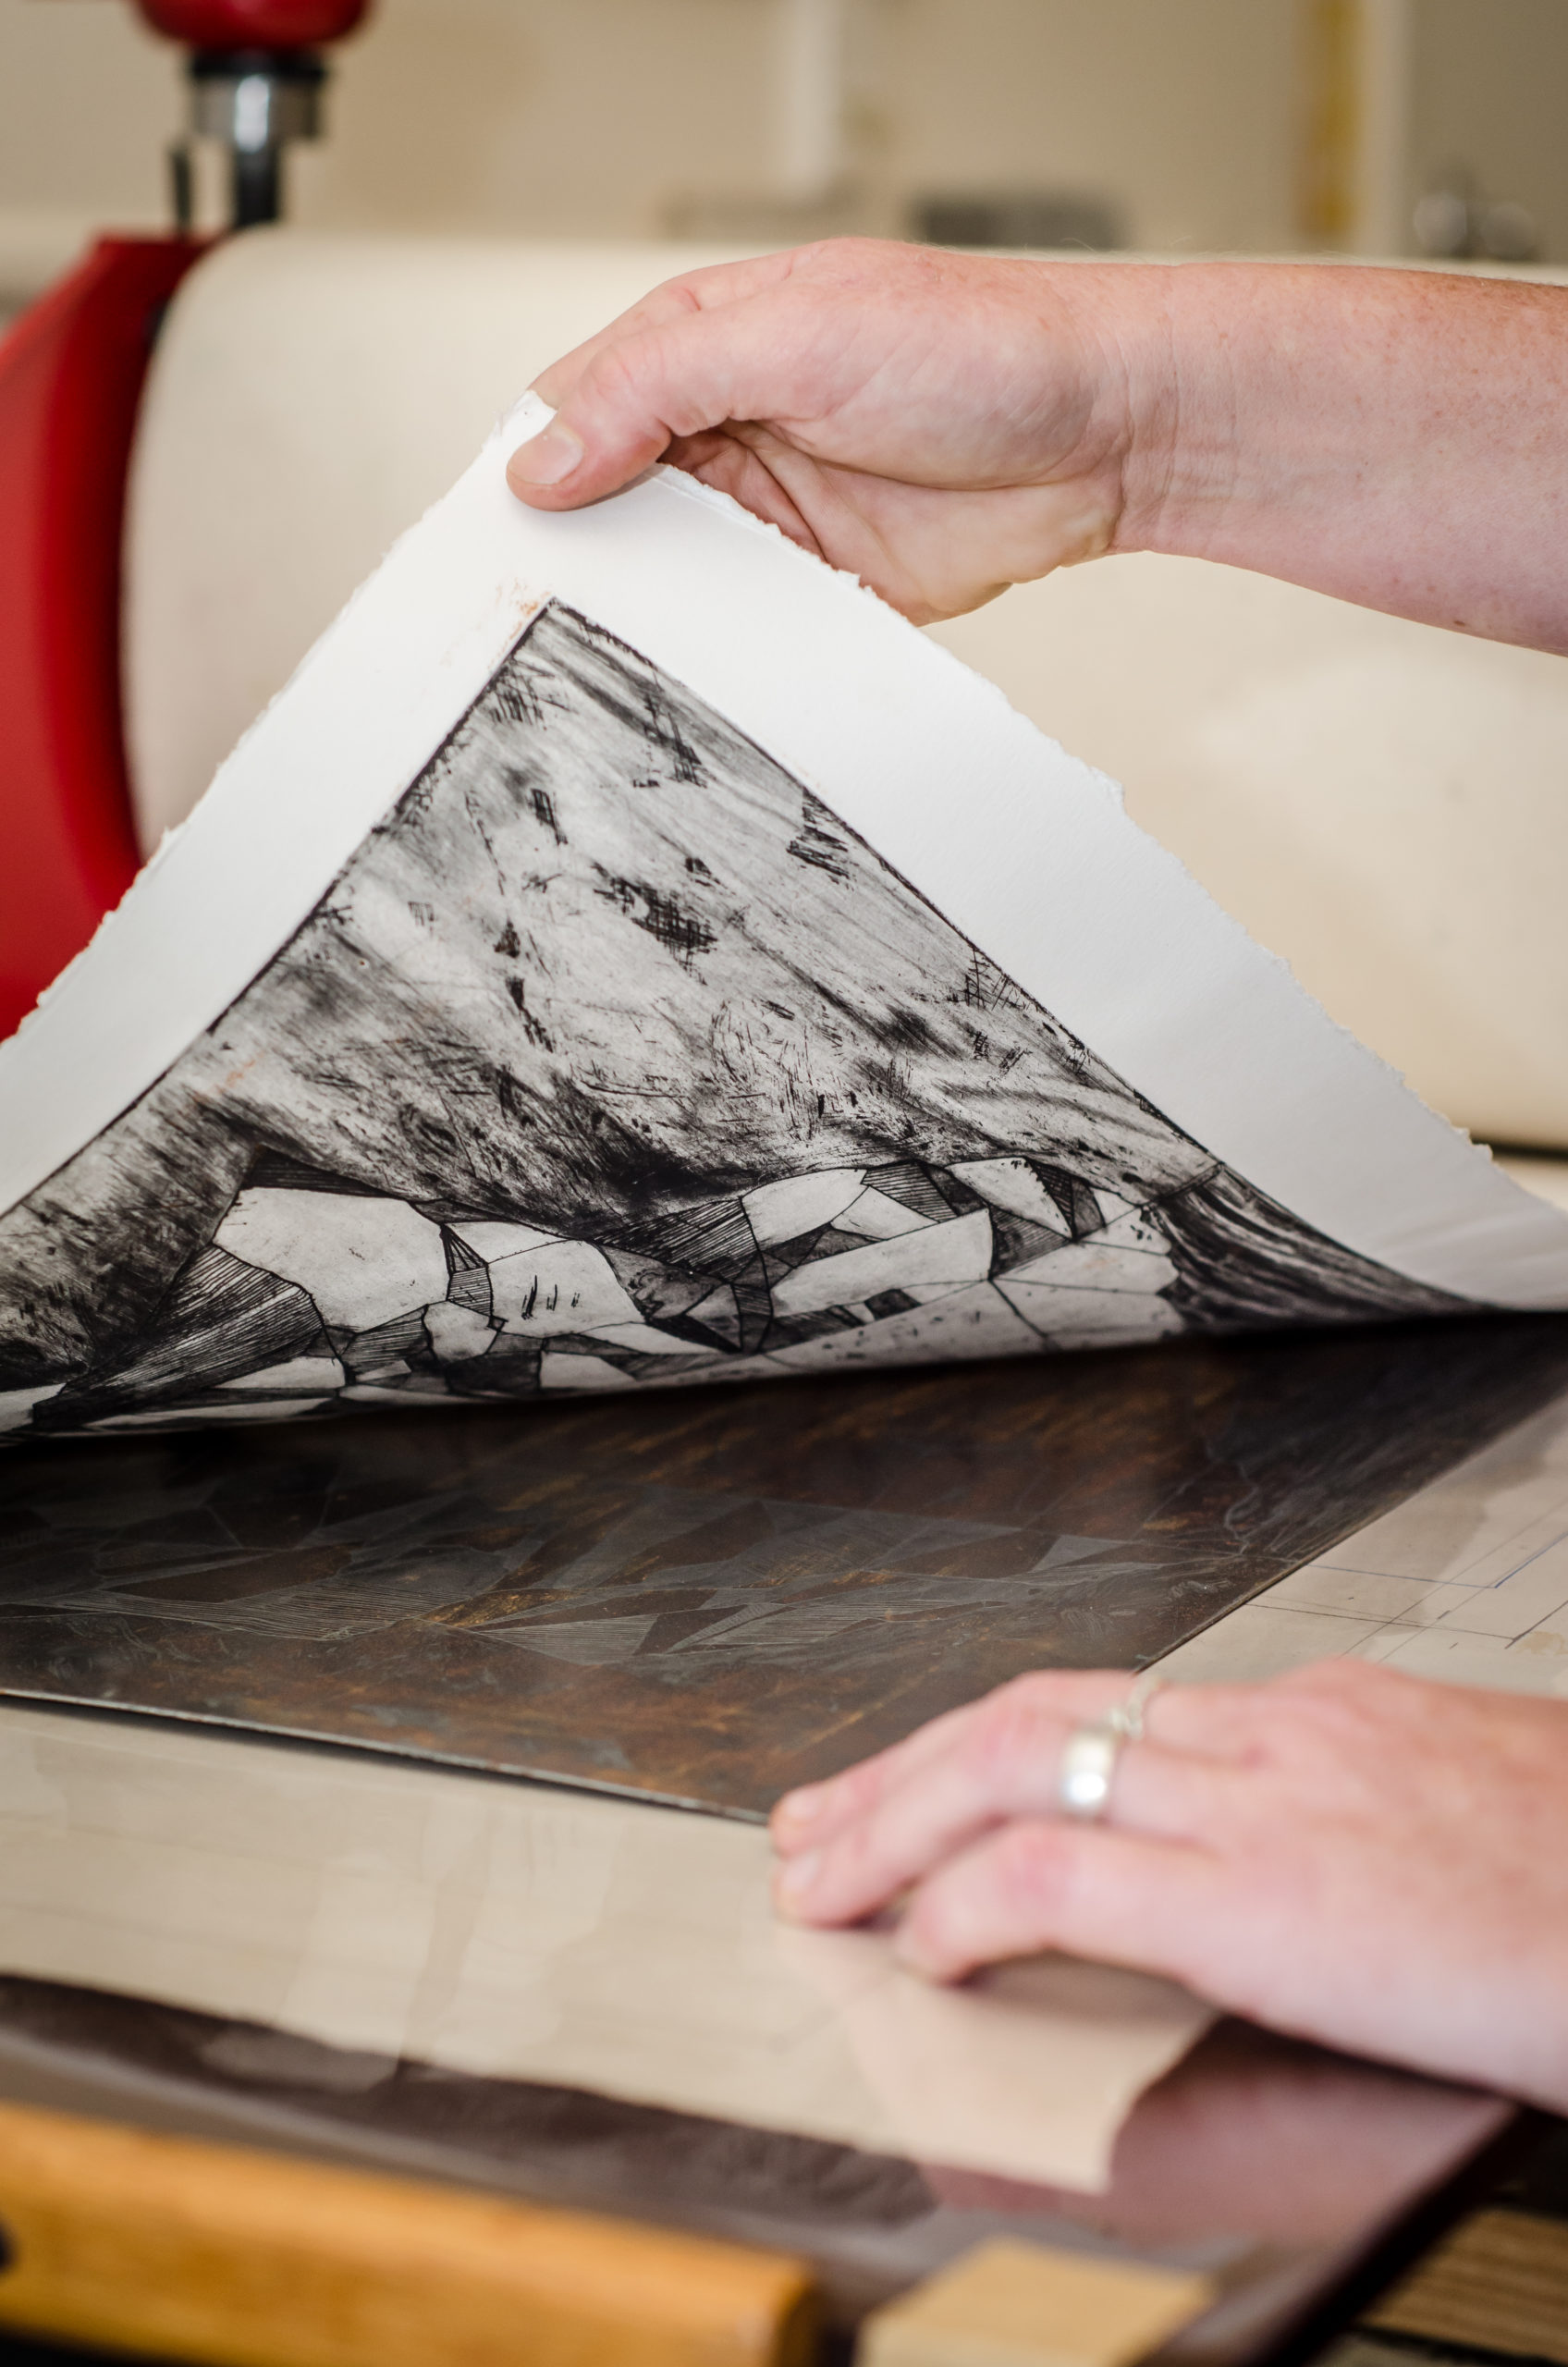 Fabriano Accademia Sketchbook - Intaglio Printmaker